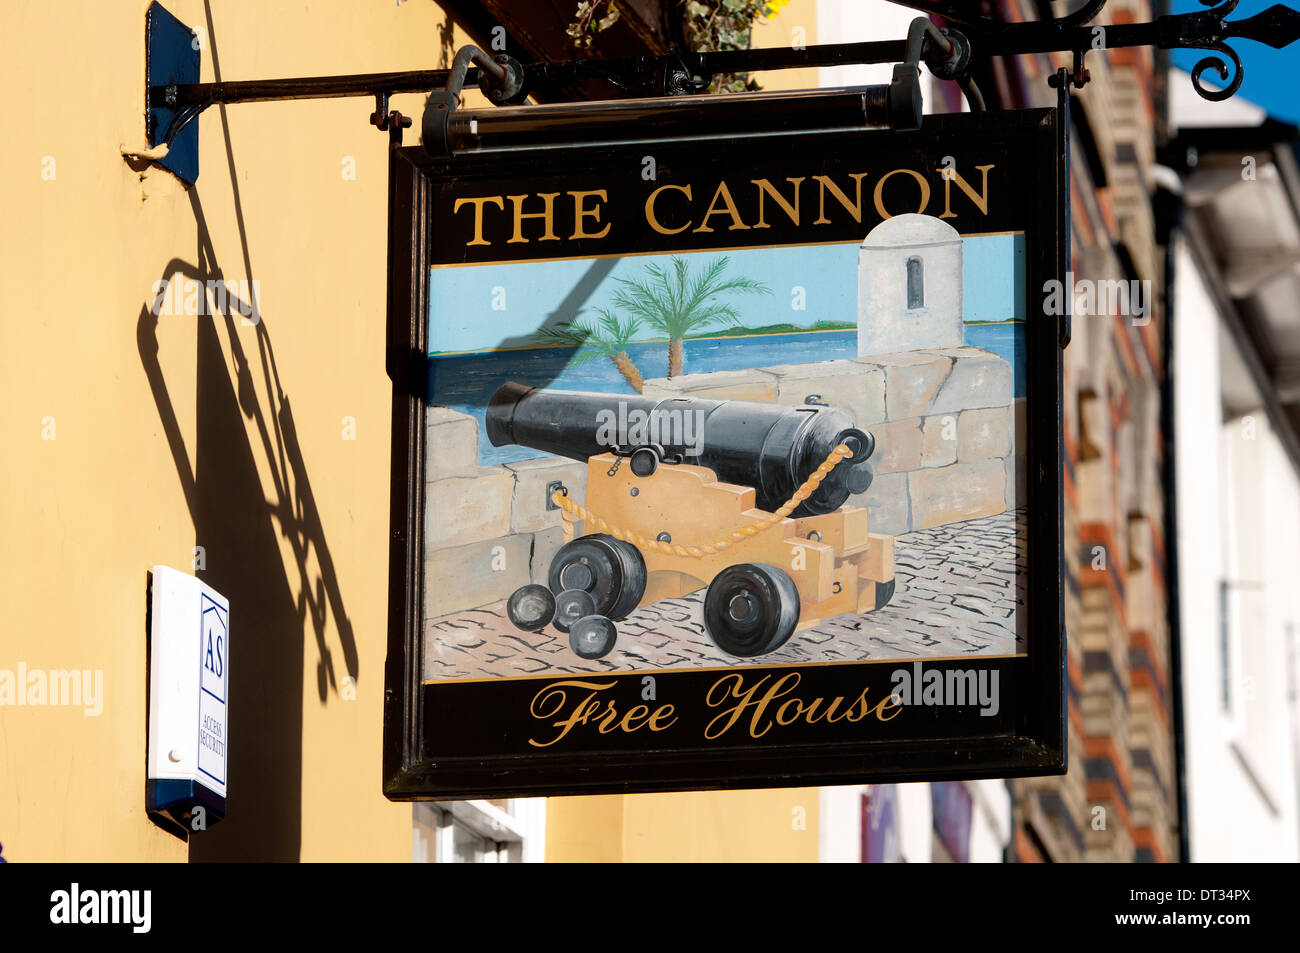 Il Cannone pub segno, Newport Pagnell, Buckinghamshire, Inghilterra, Regno Unito Foto Stock